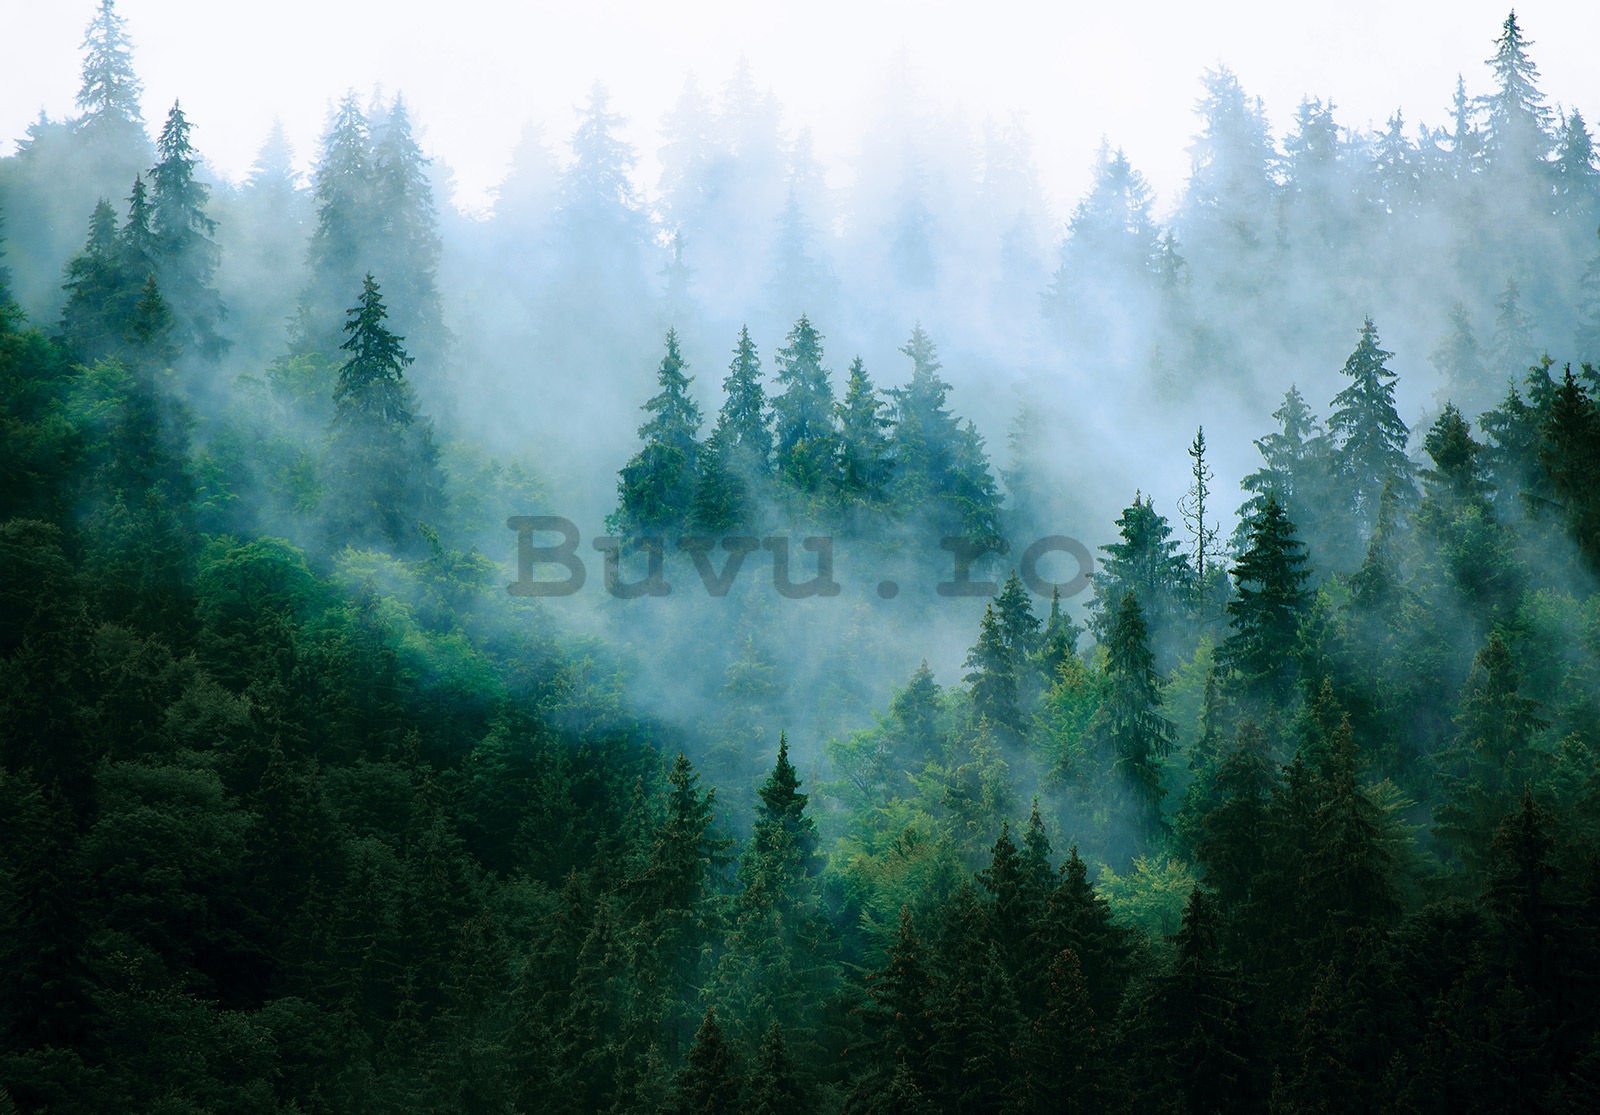 Fototapet vlies: Ceață peste pădure (3) - 368x254 cm